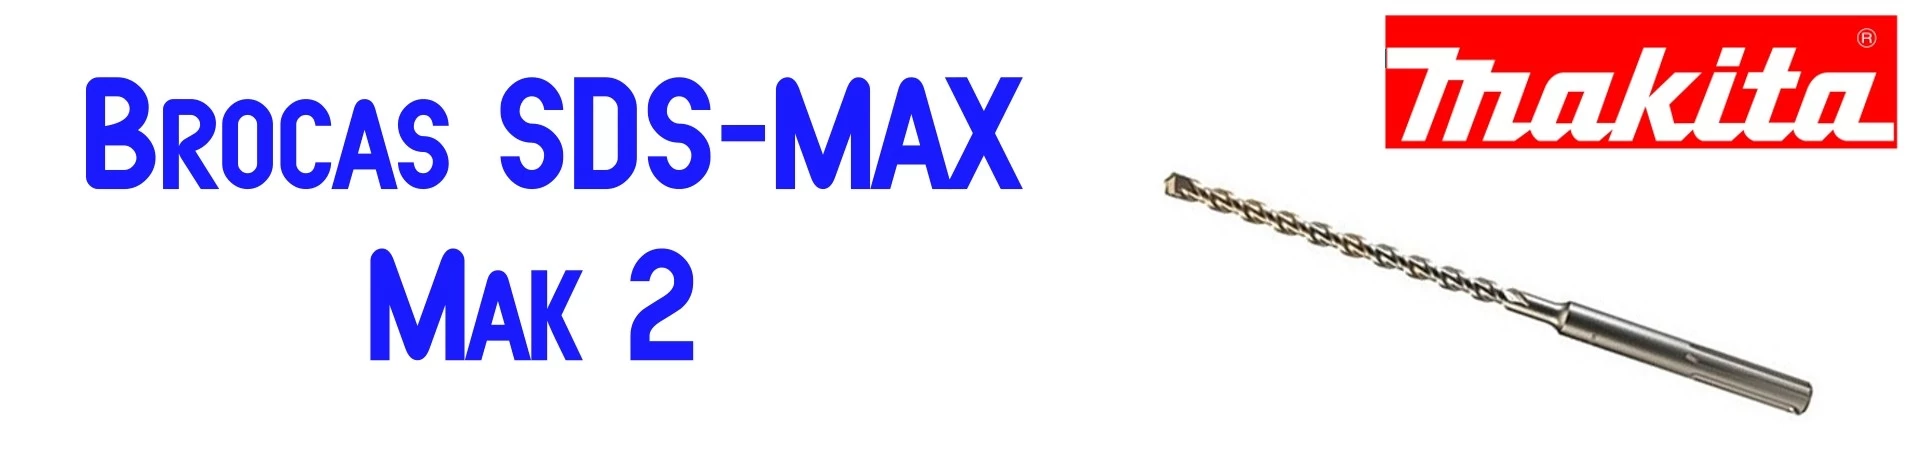 Brocas SDS-MAX Mak 2